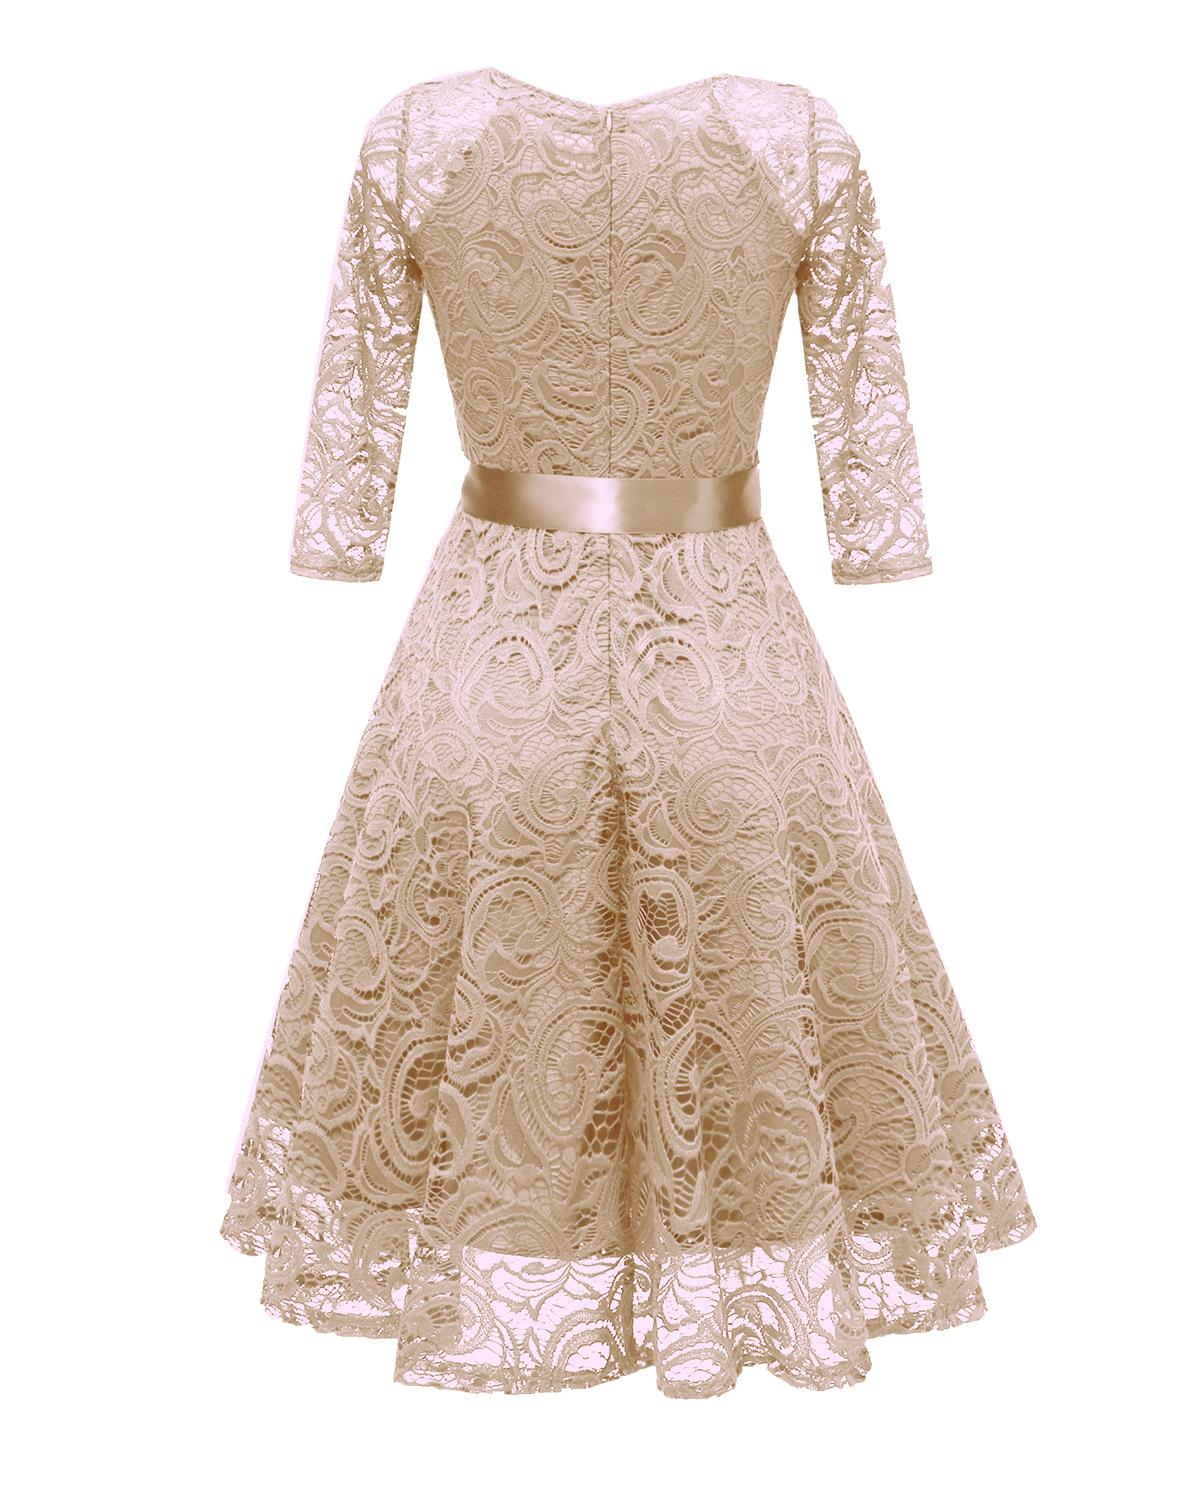 Изображение товара: Женское кружевное платье с длинным рукавом, дизайнерское платье в богемном стиле с цветочным принтом, элегантное платье размера XXL, лето 2021